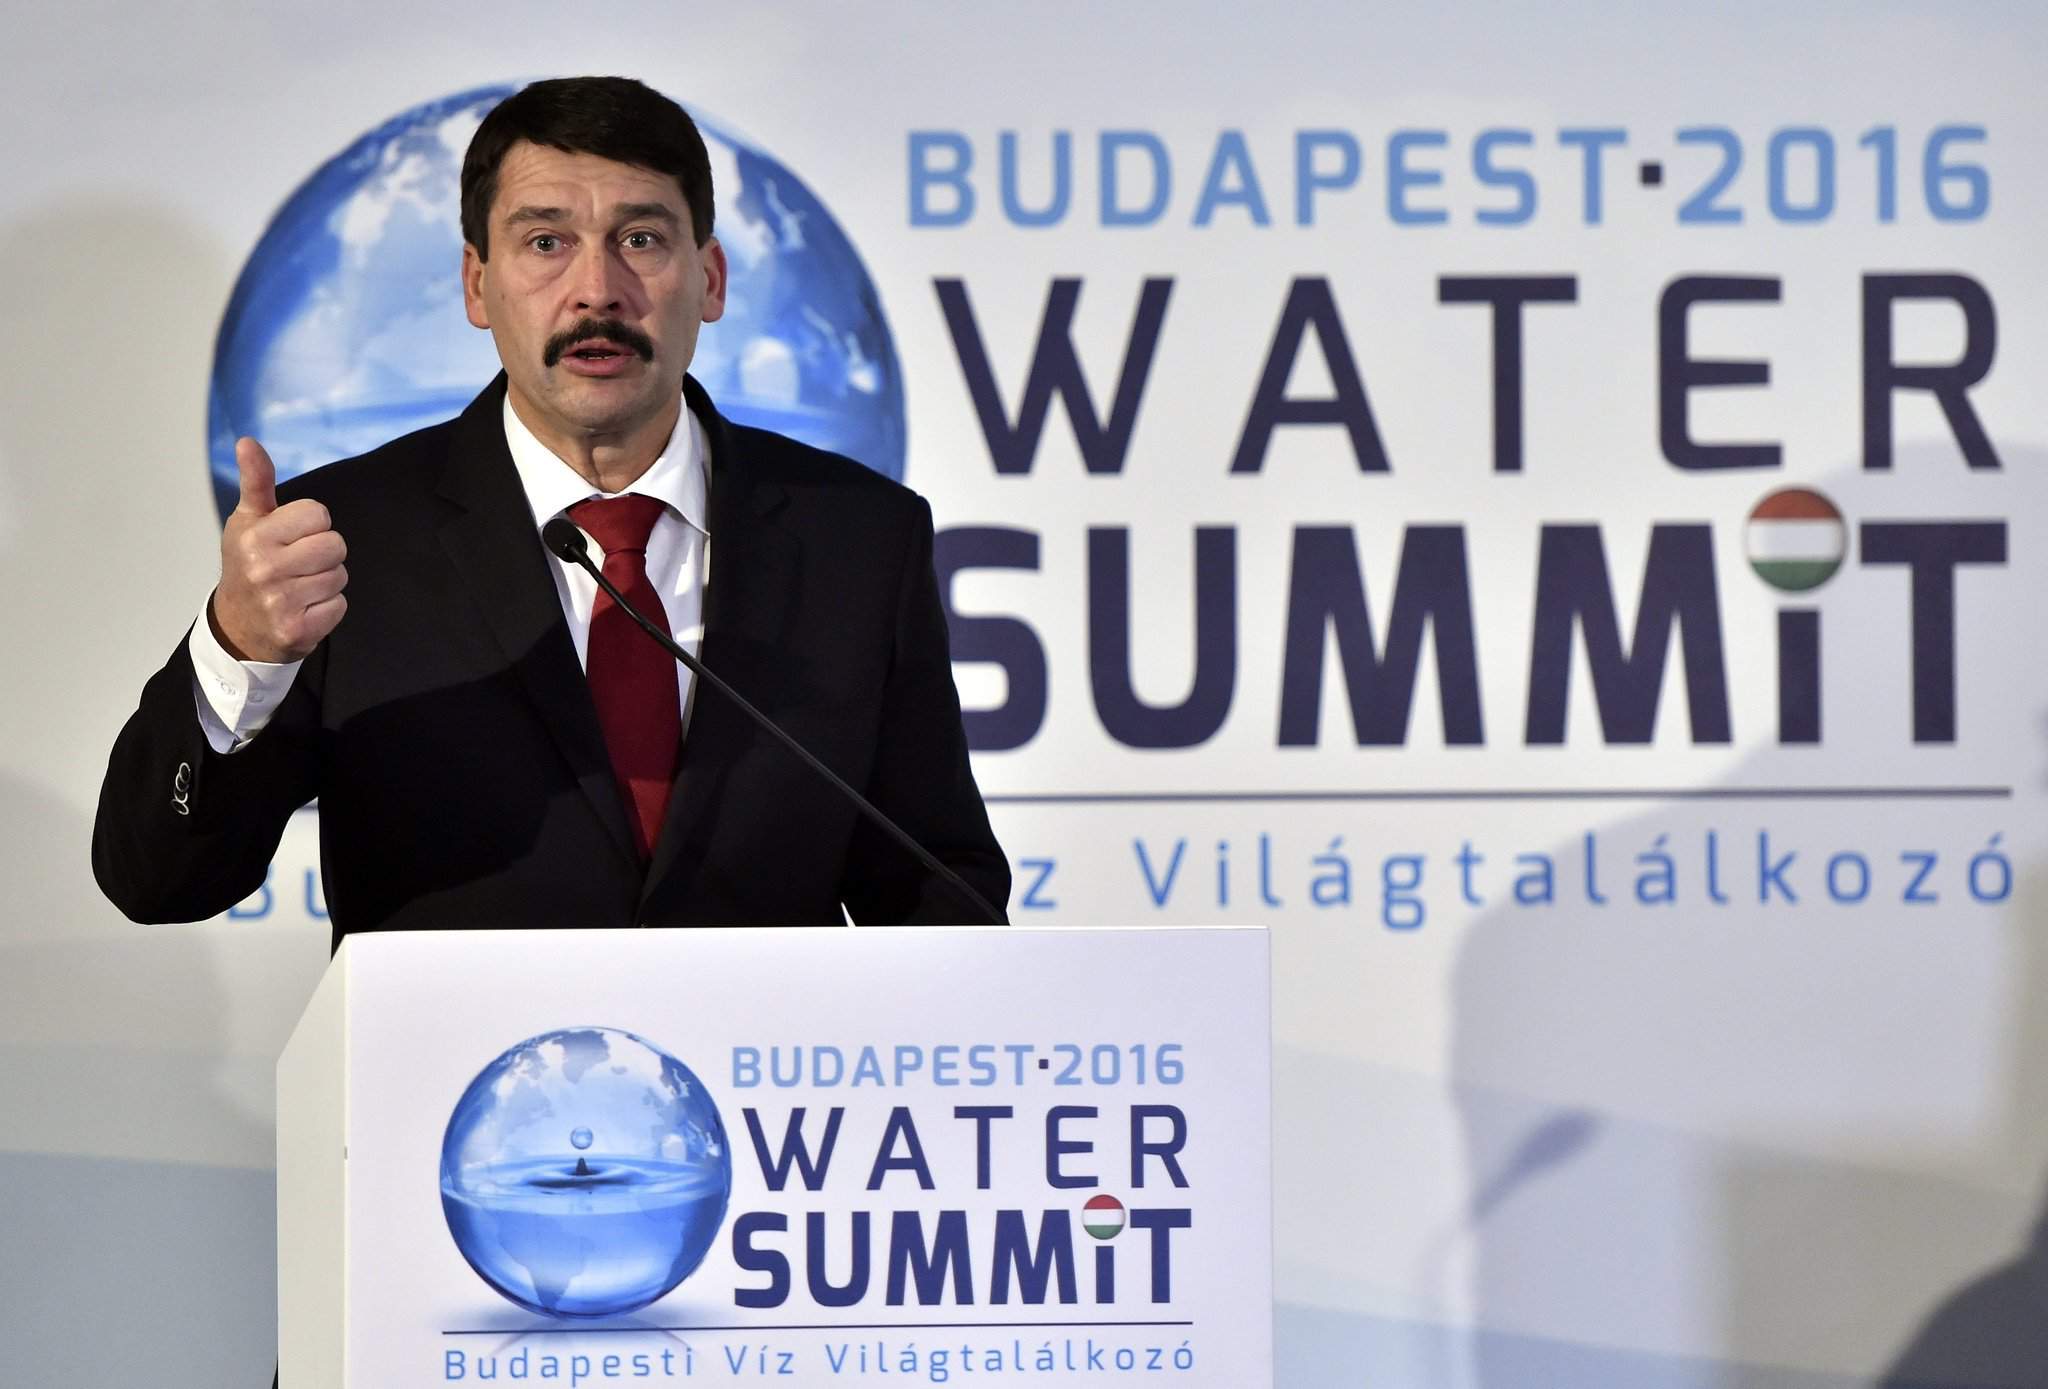 președintele summitului de apă Áder